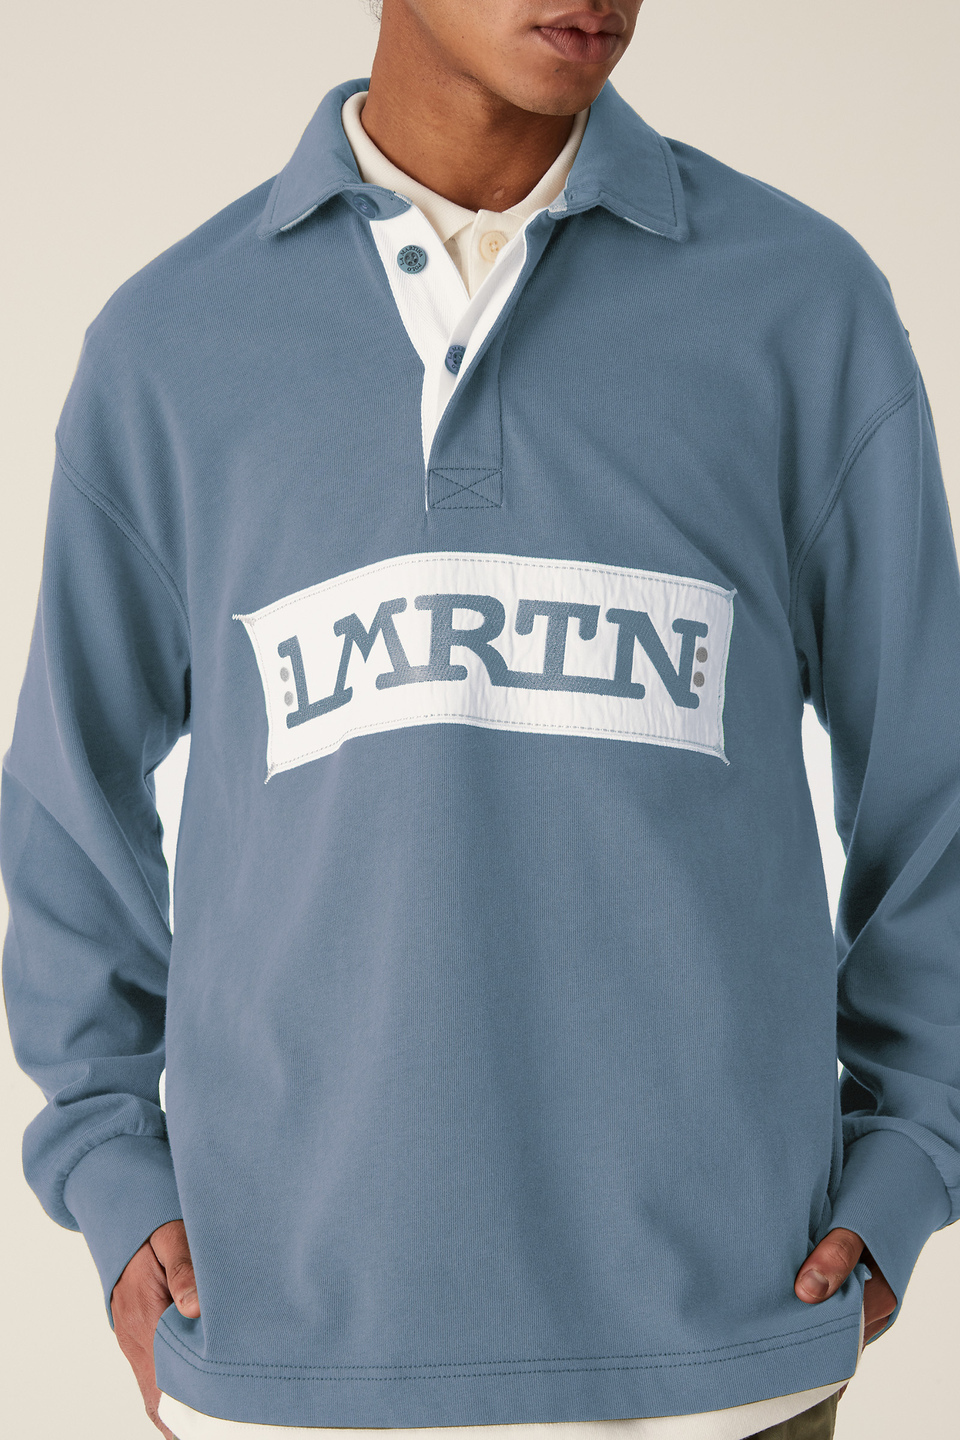 LMRTN Baumwollpoloshirt | La Martina - Official Online Shop